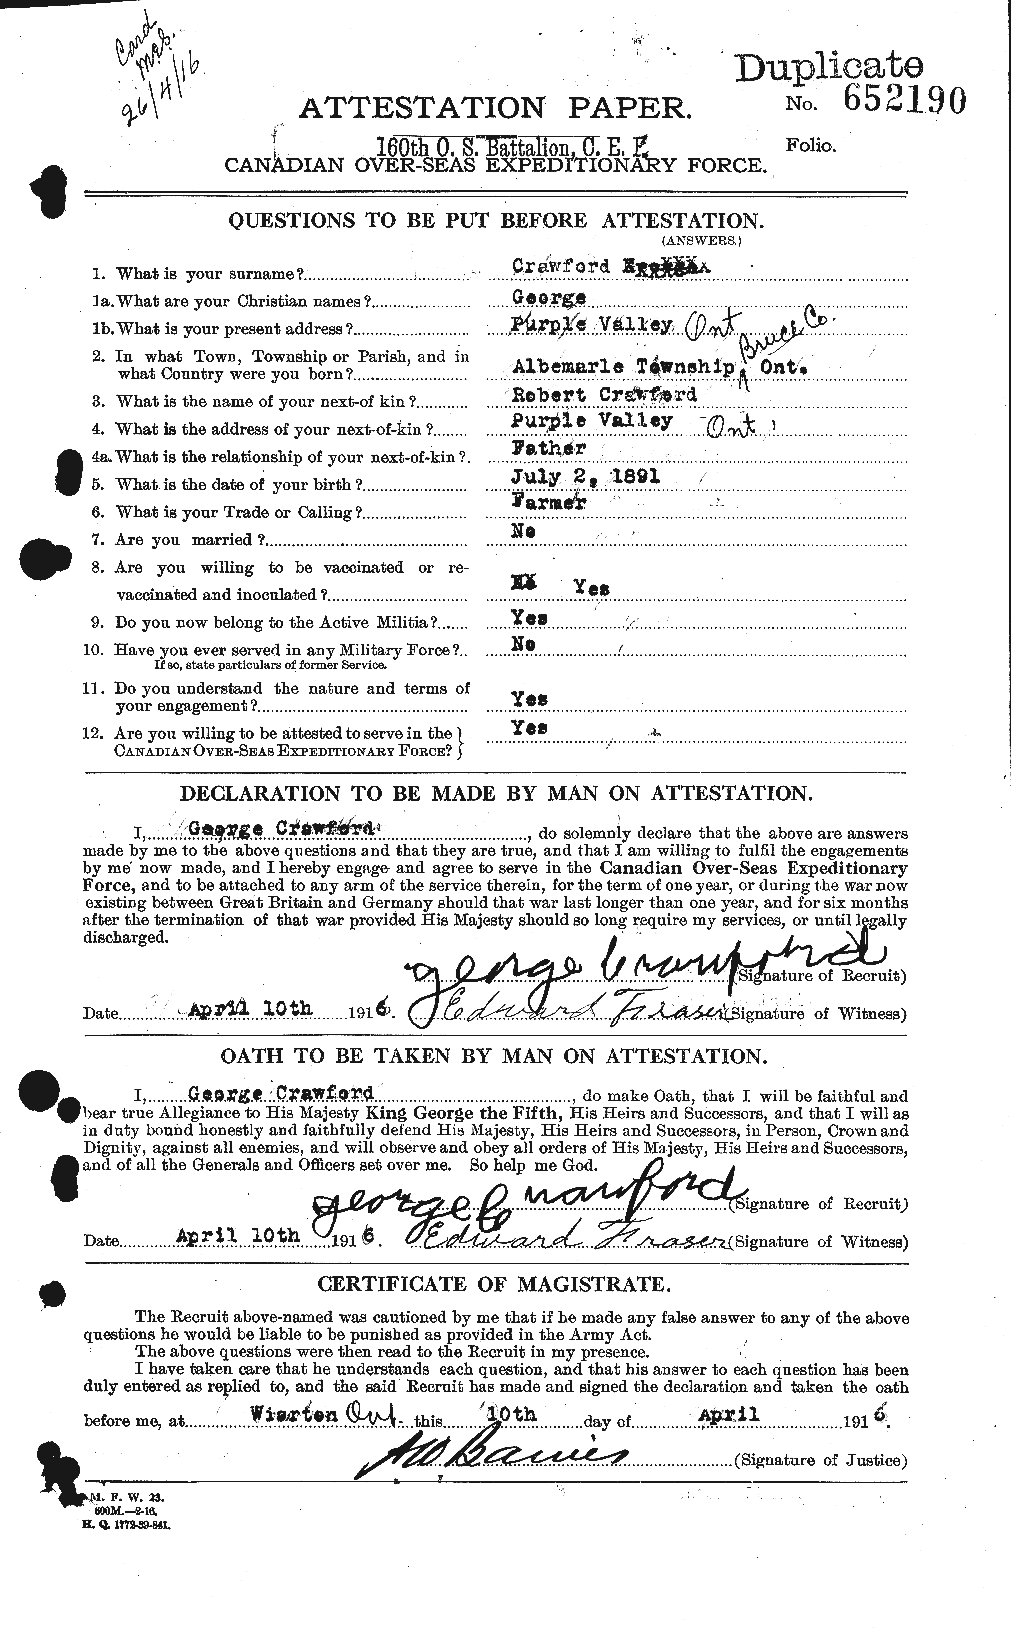 Dossiers du Personnel de la Première Guerre mondiale - CEC 060715a